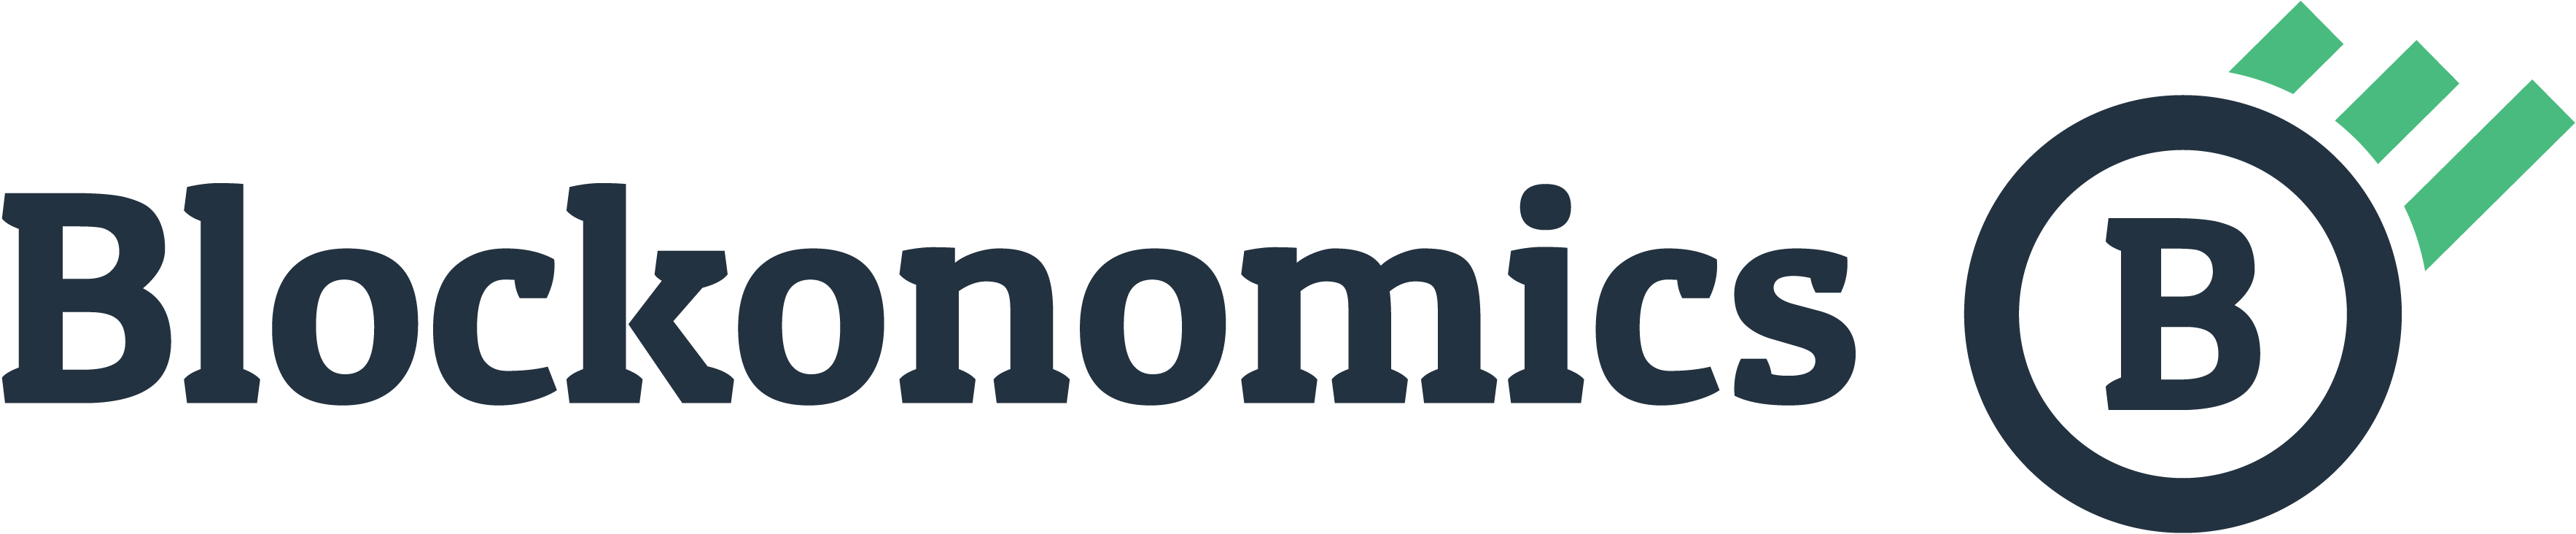 File:Blockonomics logo.png